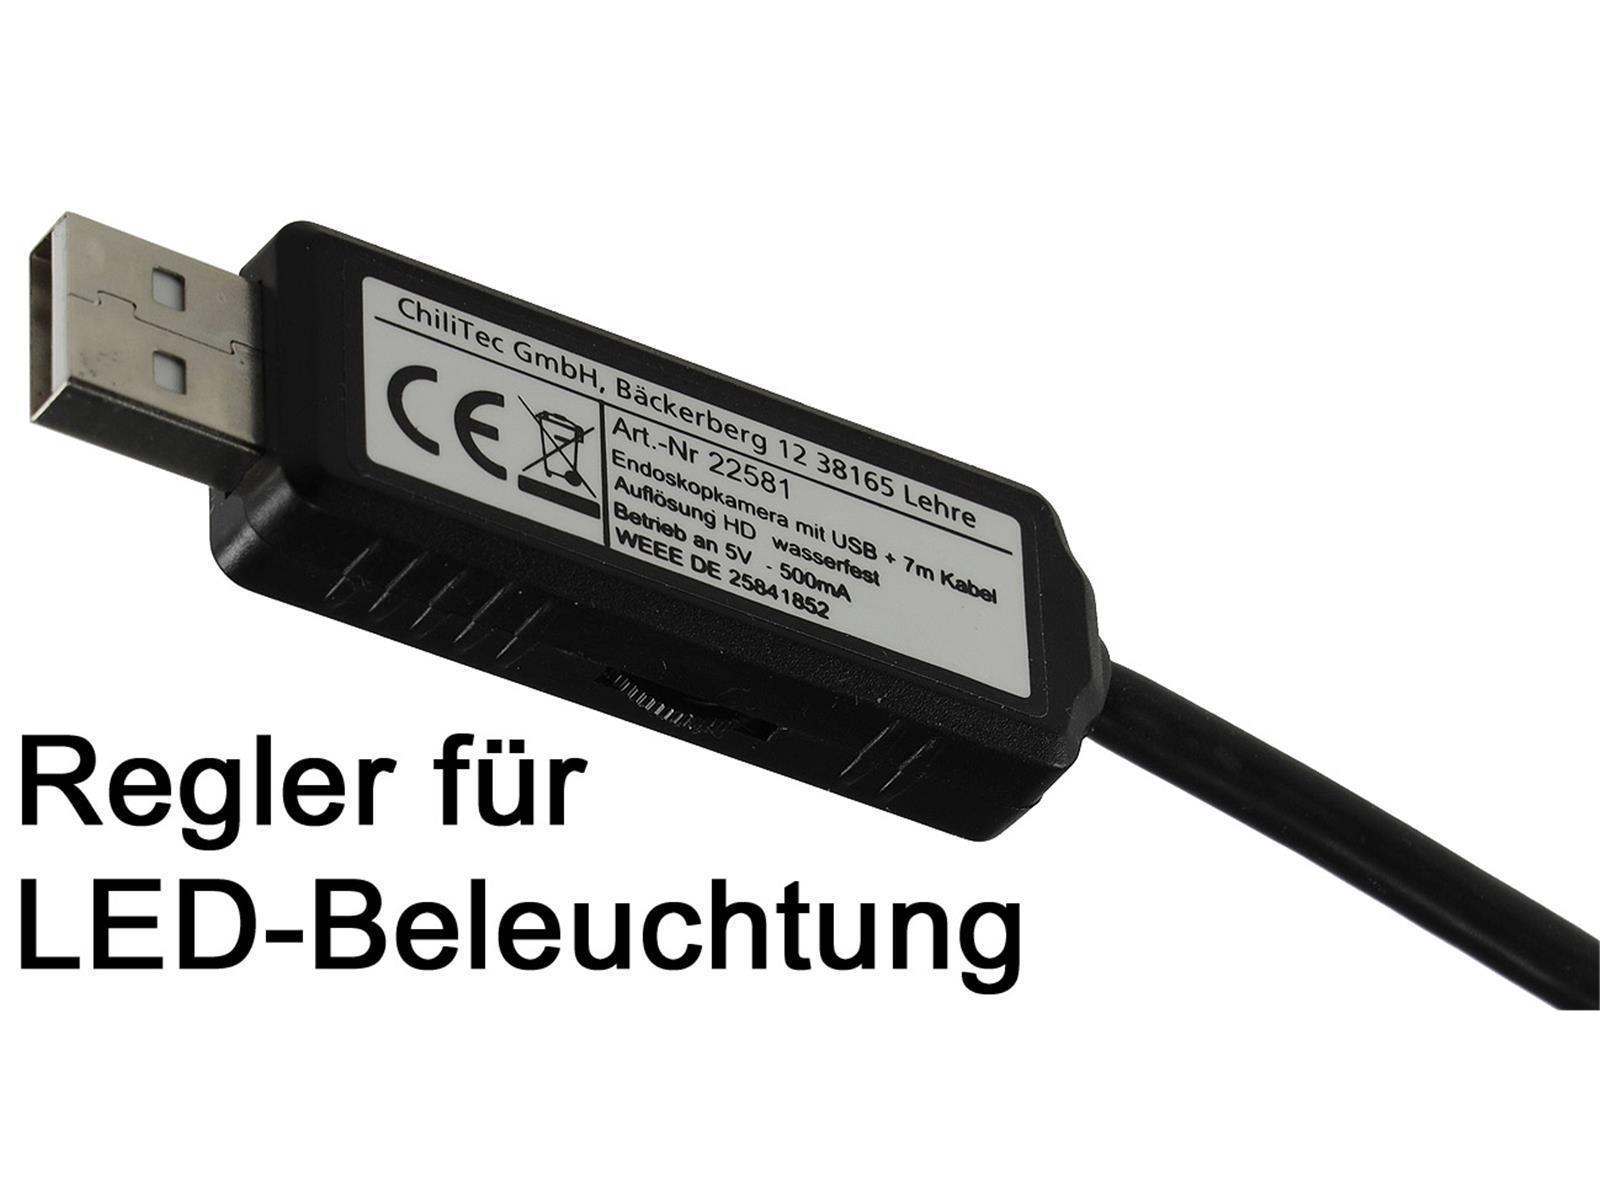 Endoskopkamera USB mit 7m KabelHD Auflösung 1600x1200, IP67 wasserfest